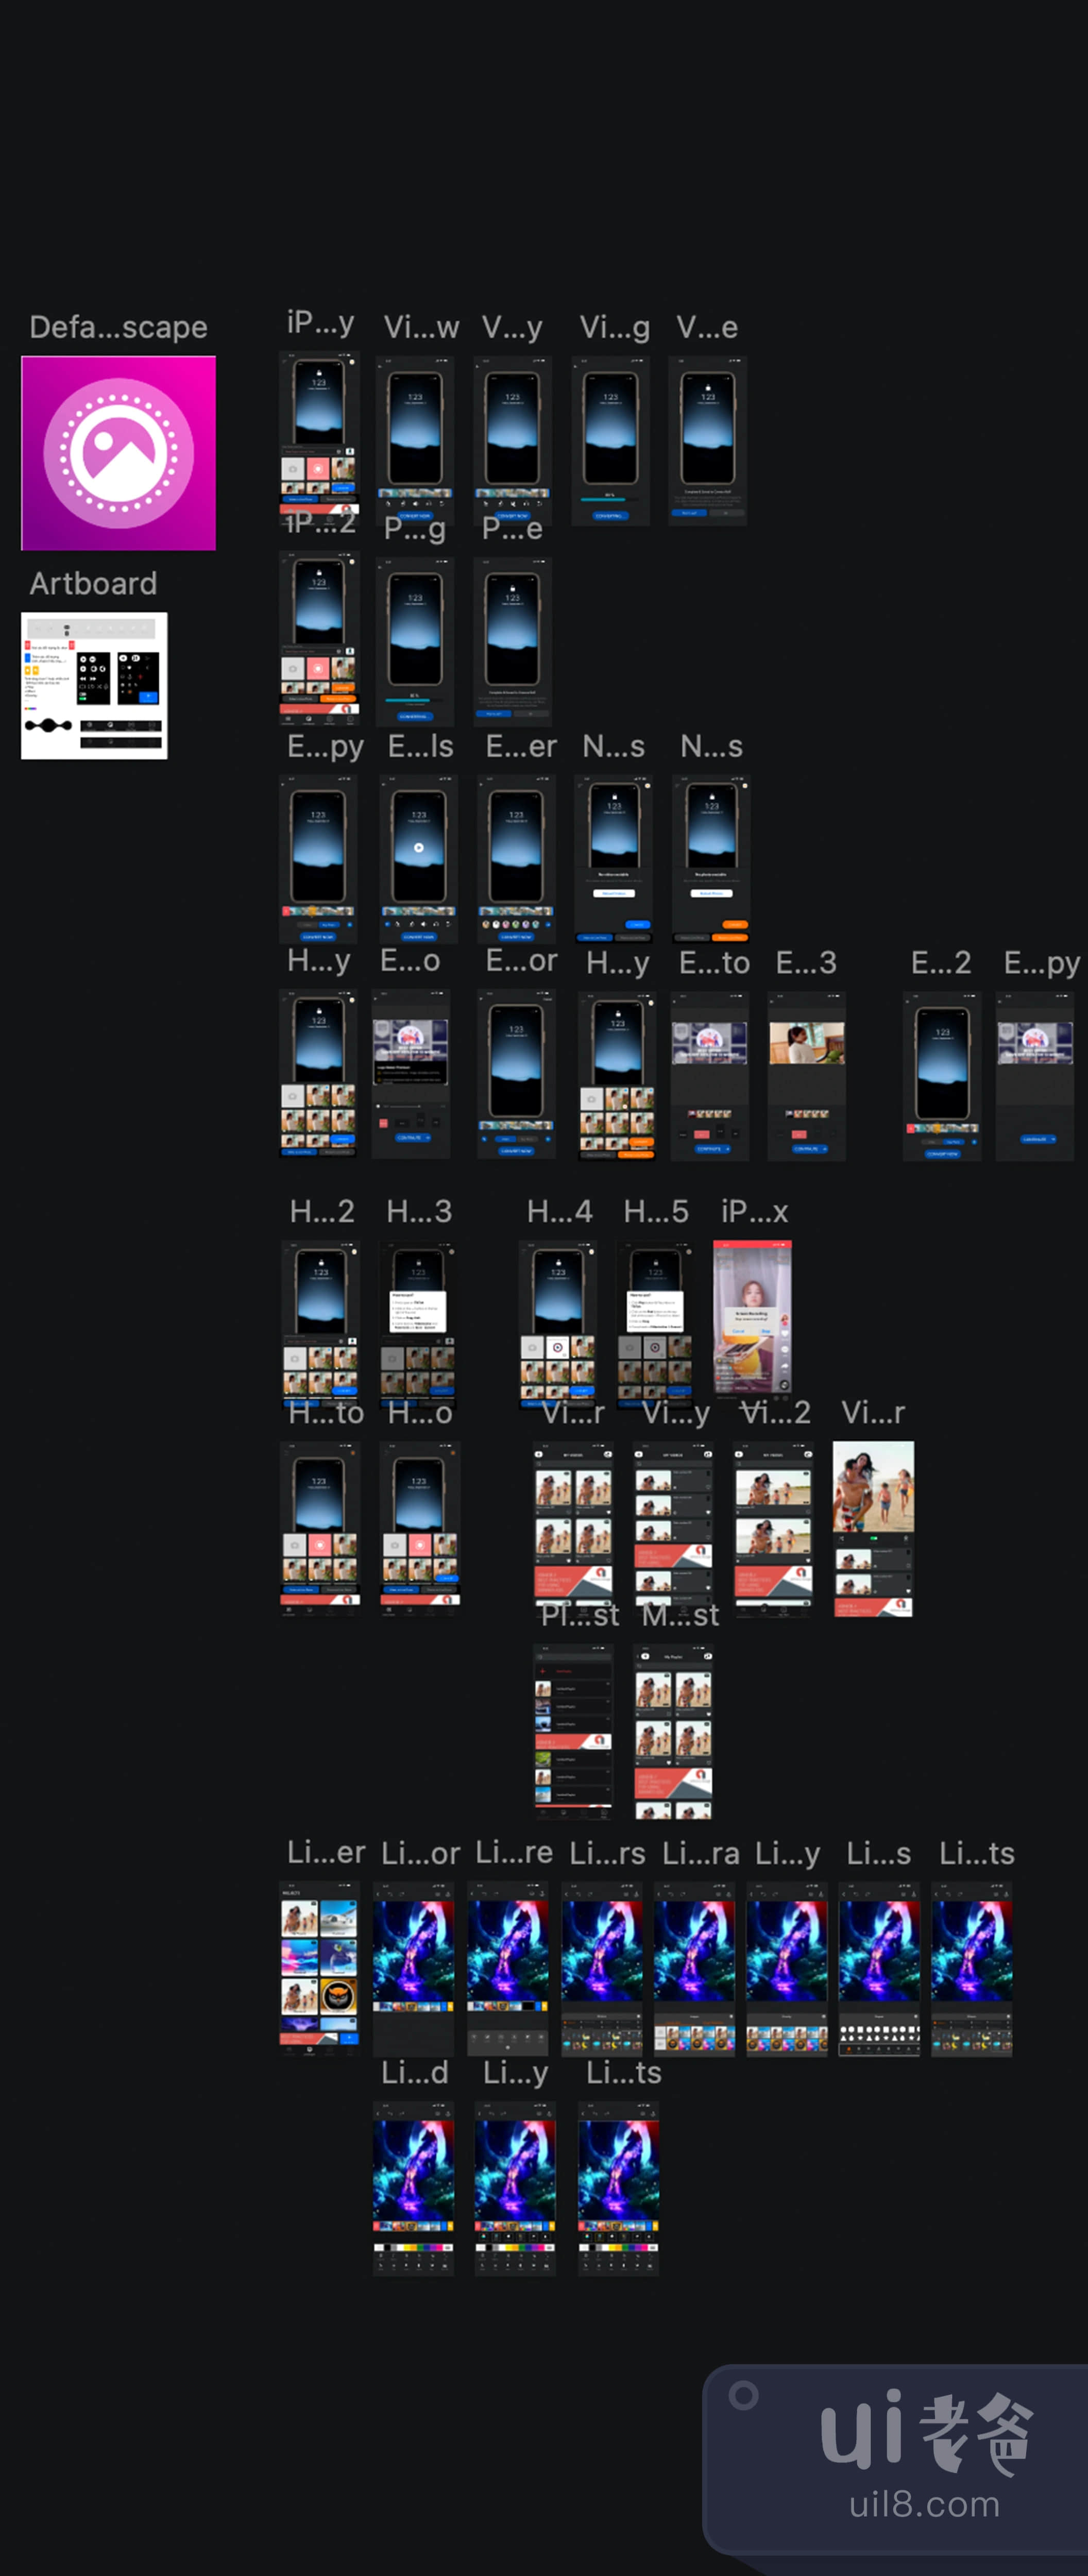 现场照片制作移动应用UI包 (Live Photo Maker Mobile App UI Kit)插图